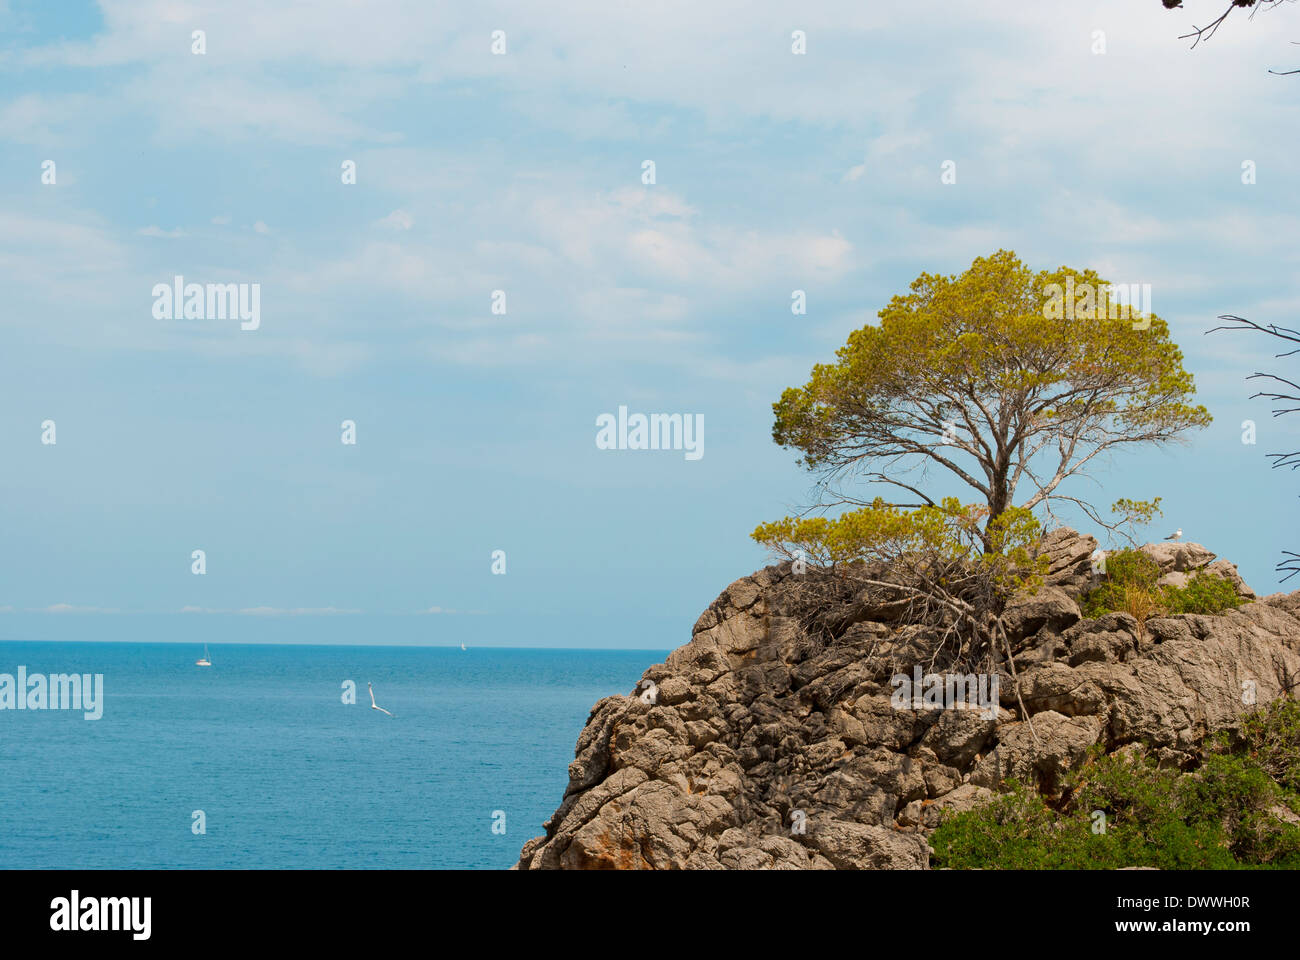 Mediterranean landscape in Mallorca Stock Photo